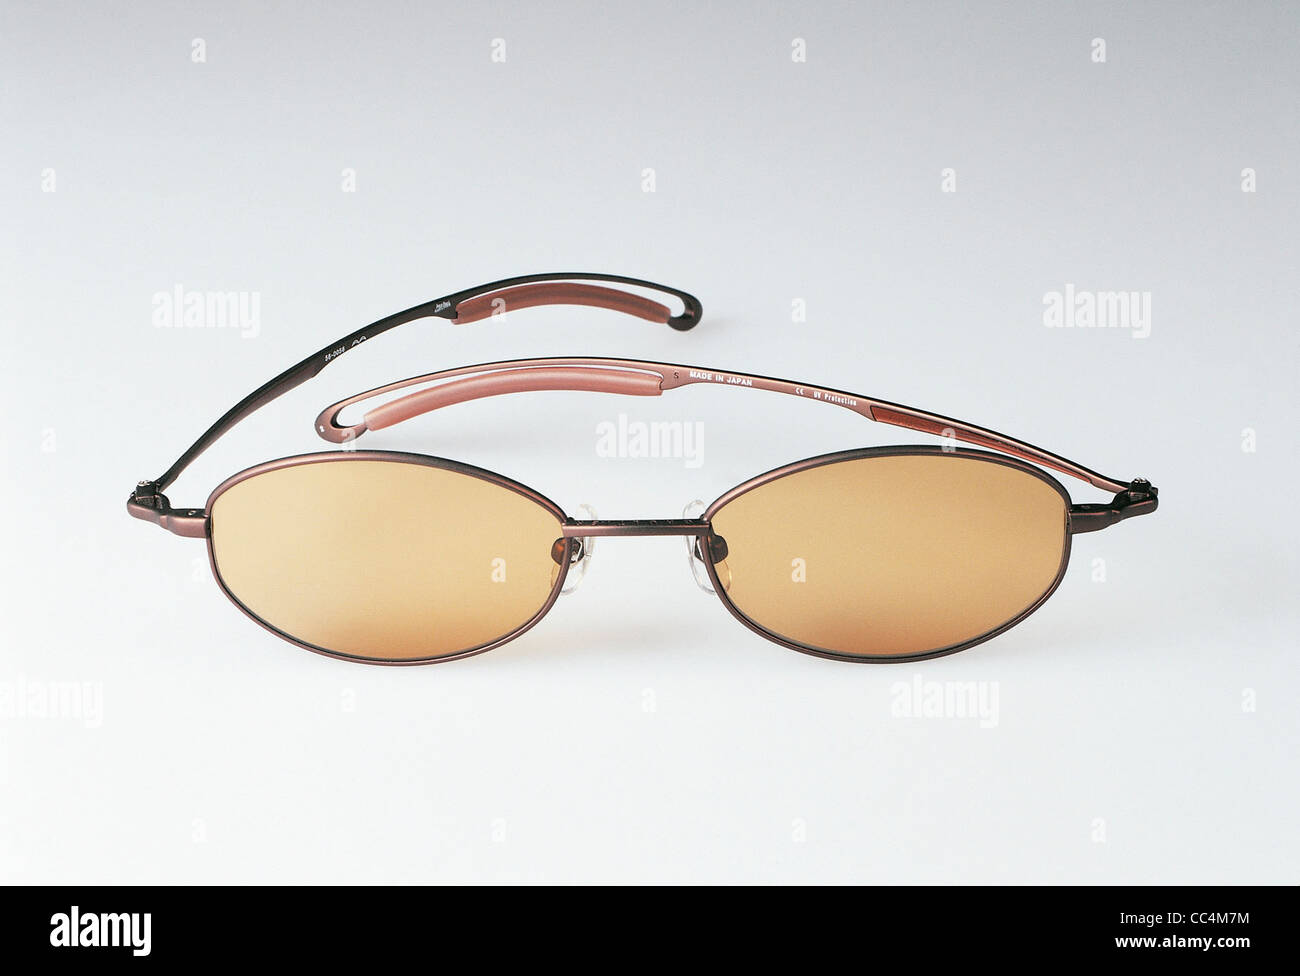 Jean Paul Gaultier Sunglasses Wholesale Outlet, Save 46% | jlcatj.gob.mx